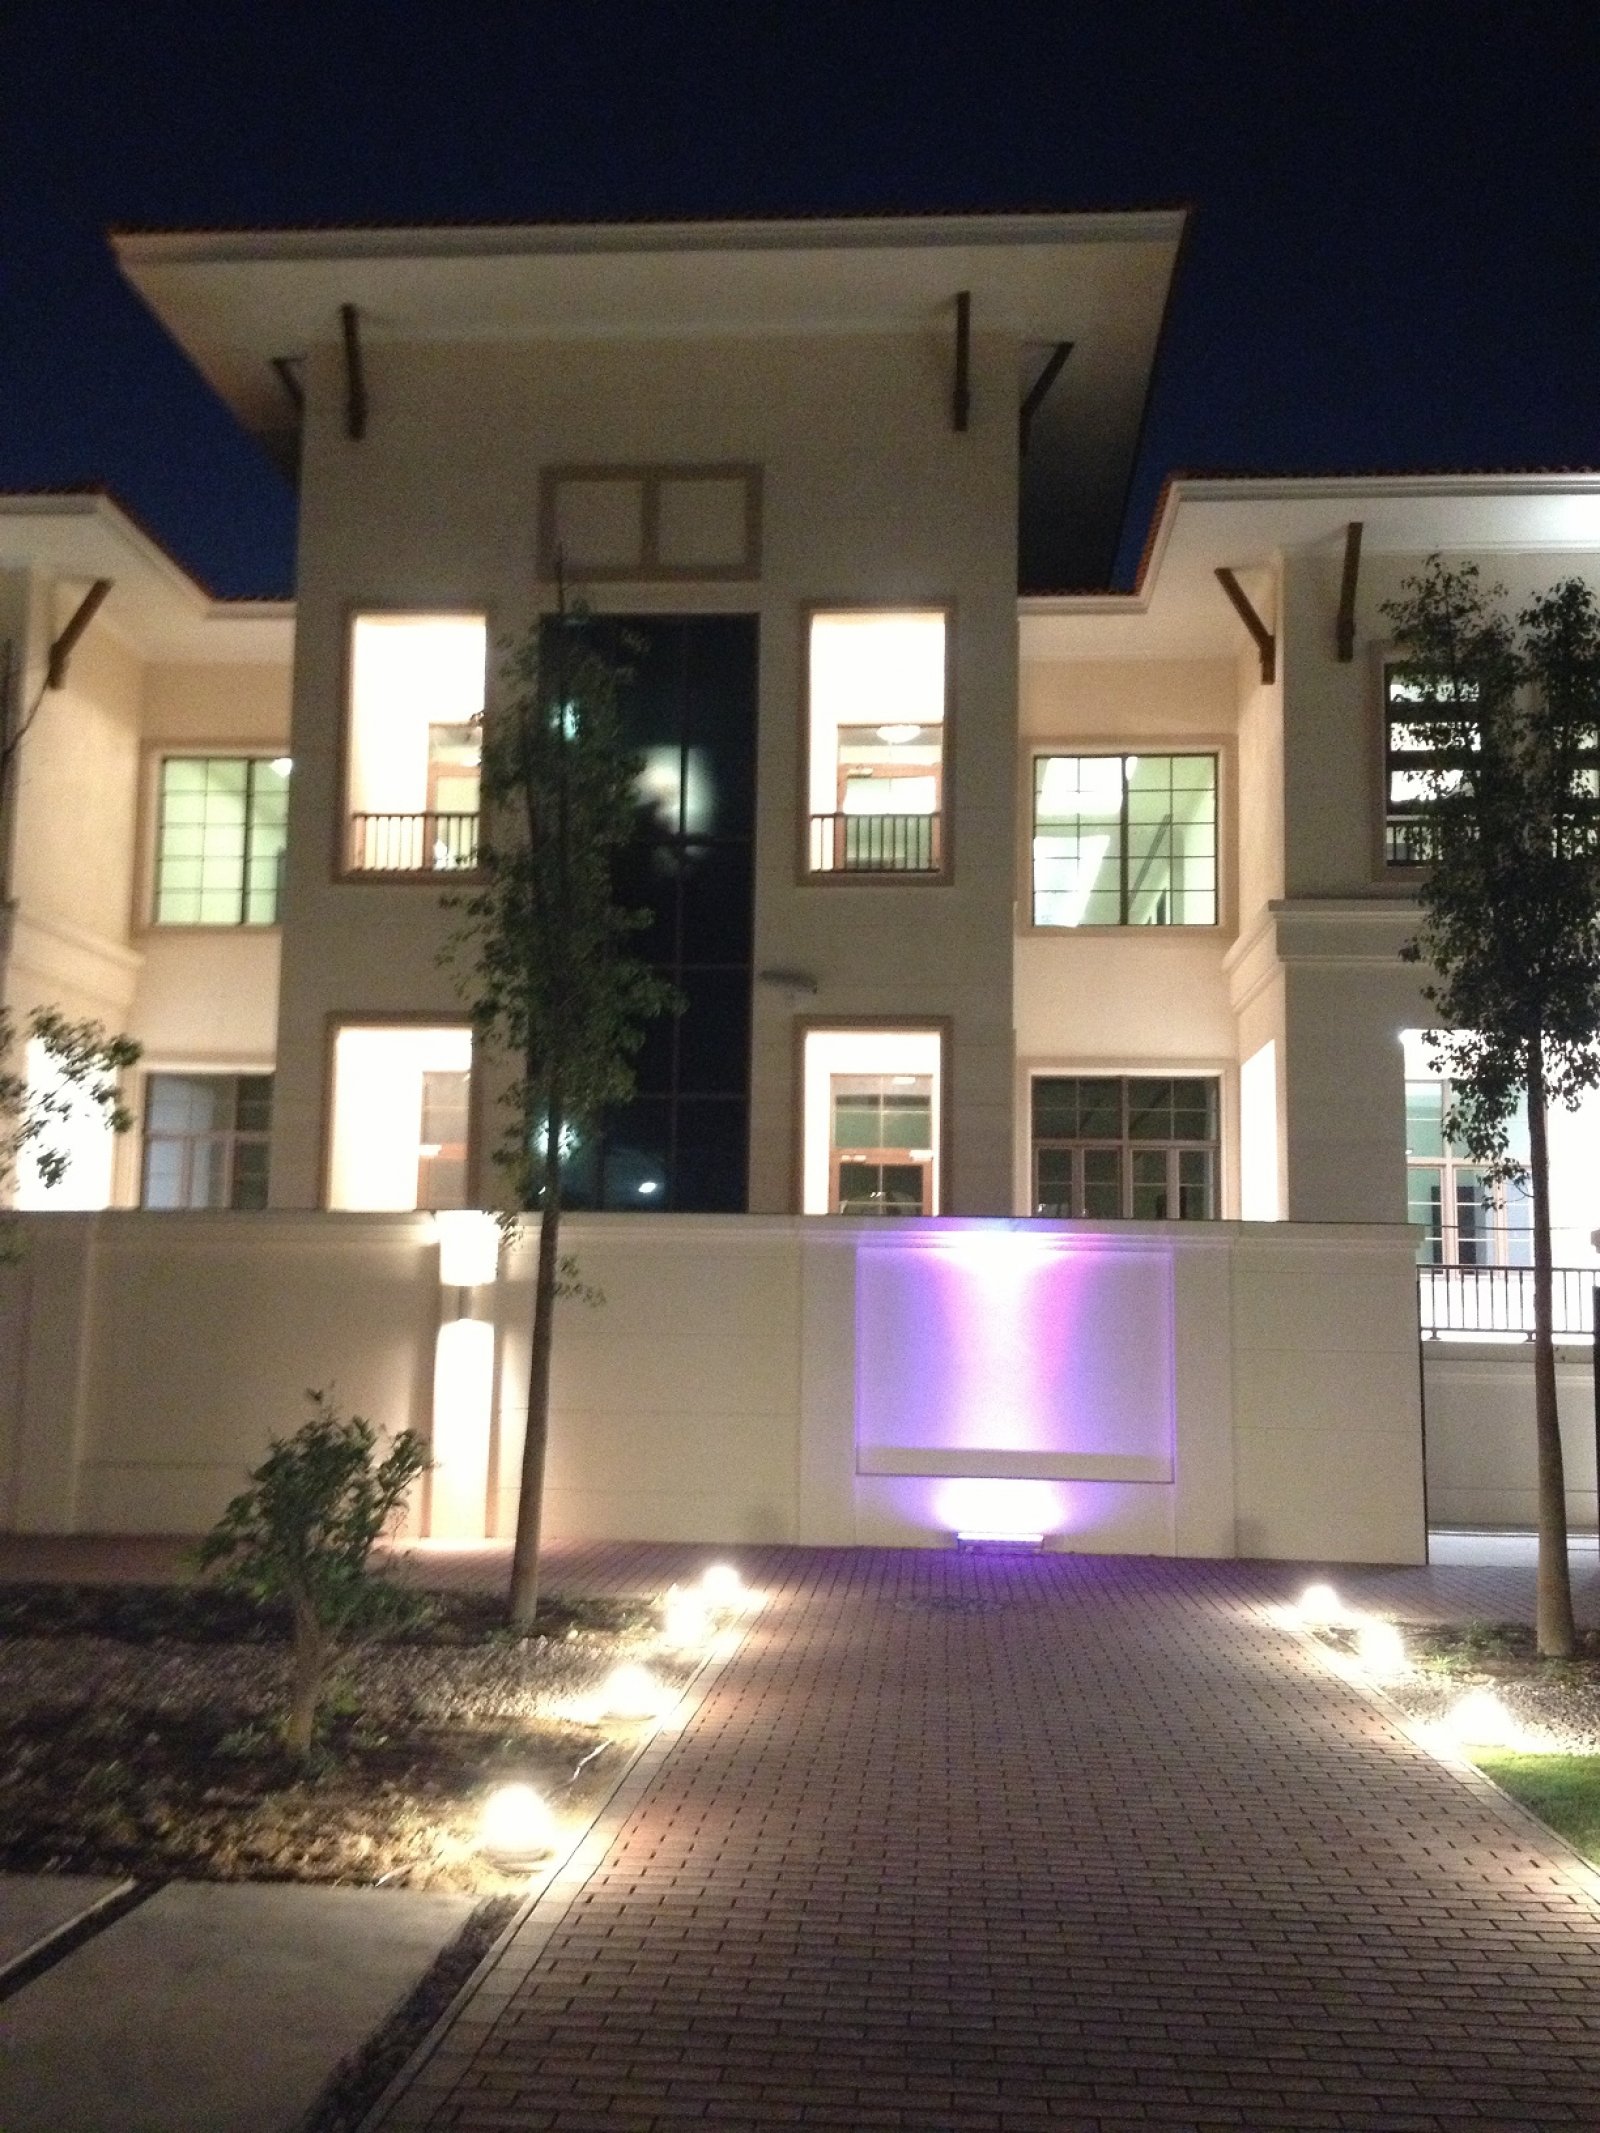 Doha Turkish Embassy Building, Qatar